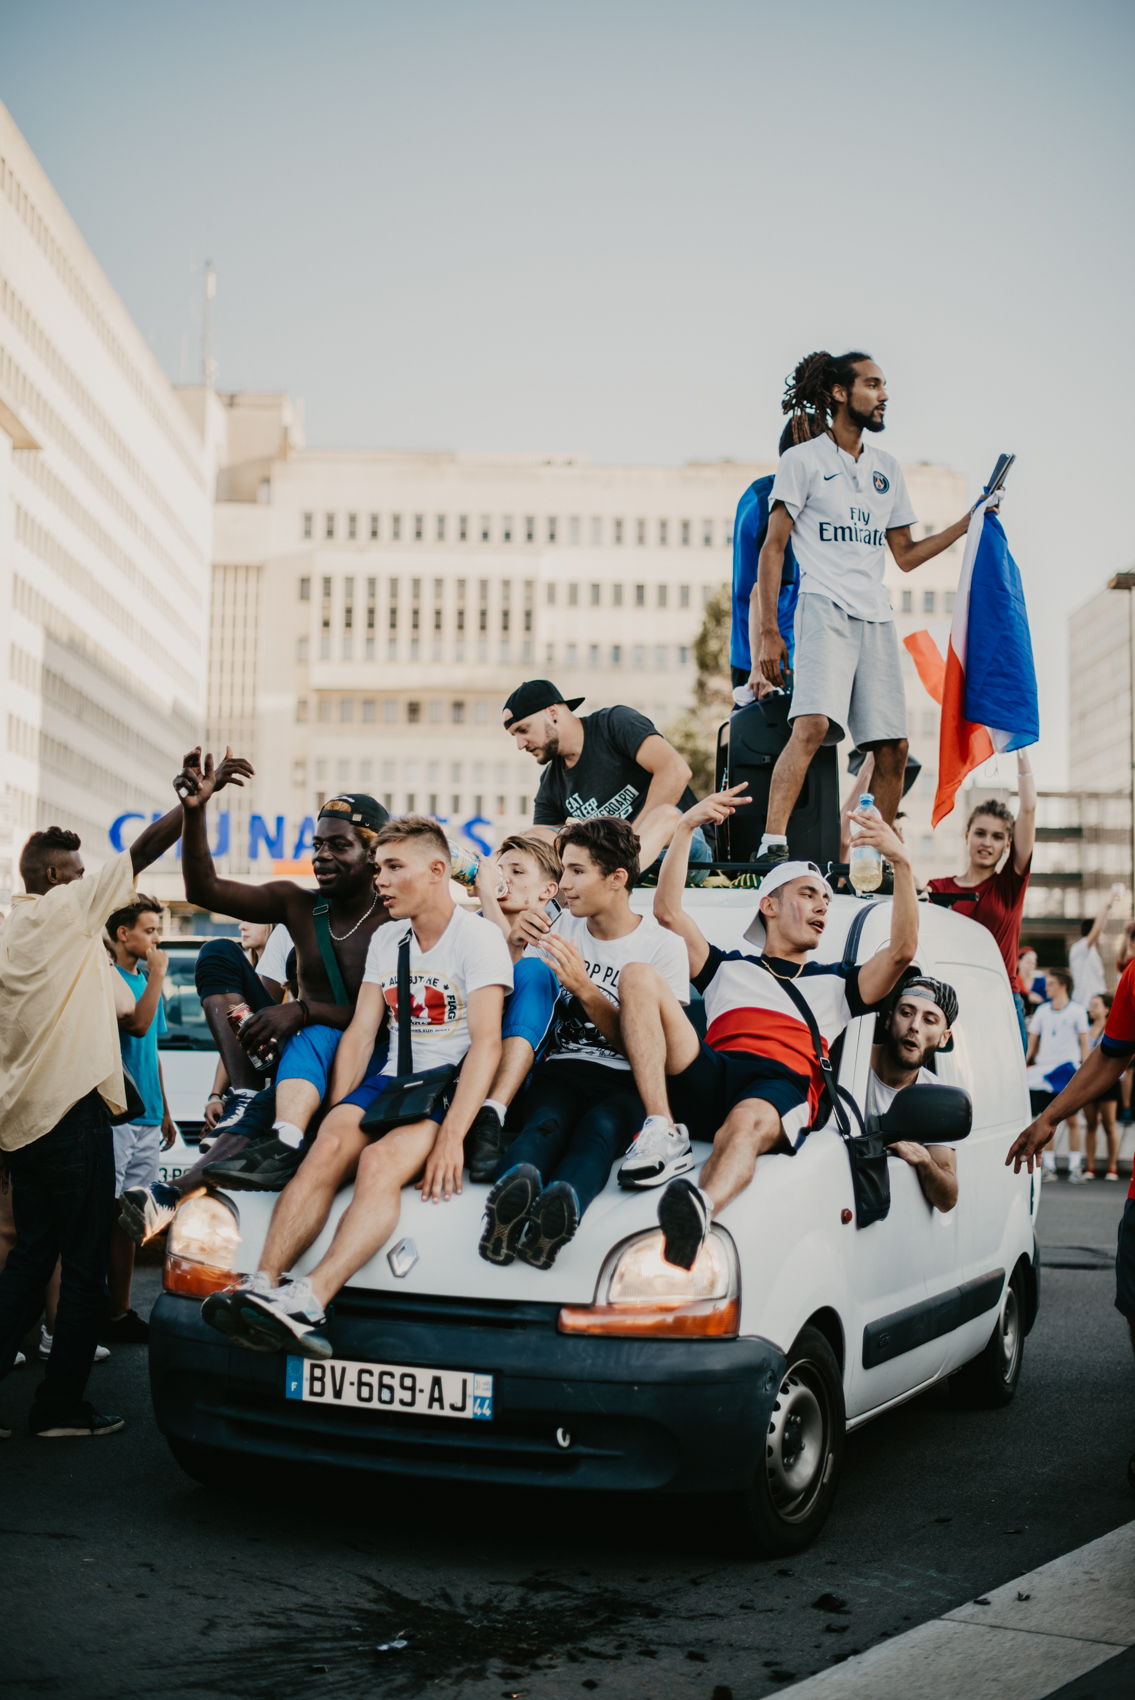 Evan FORGET – Photographe sur Nantes – COUPE DU MONDE FRANCE 2018 RUSSIE-33